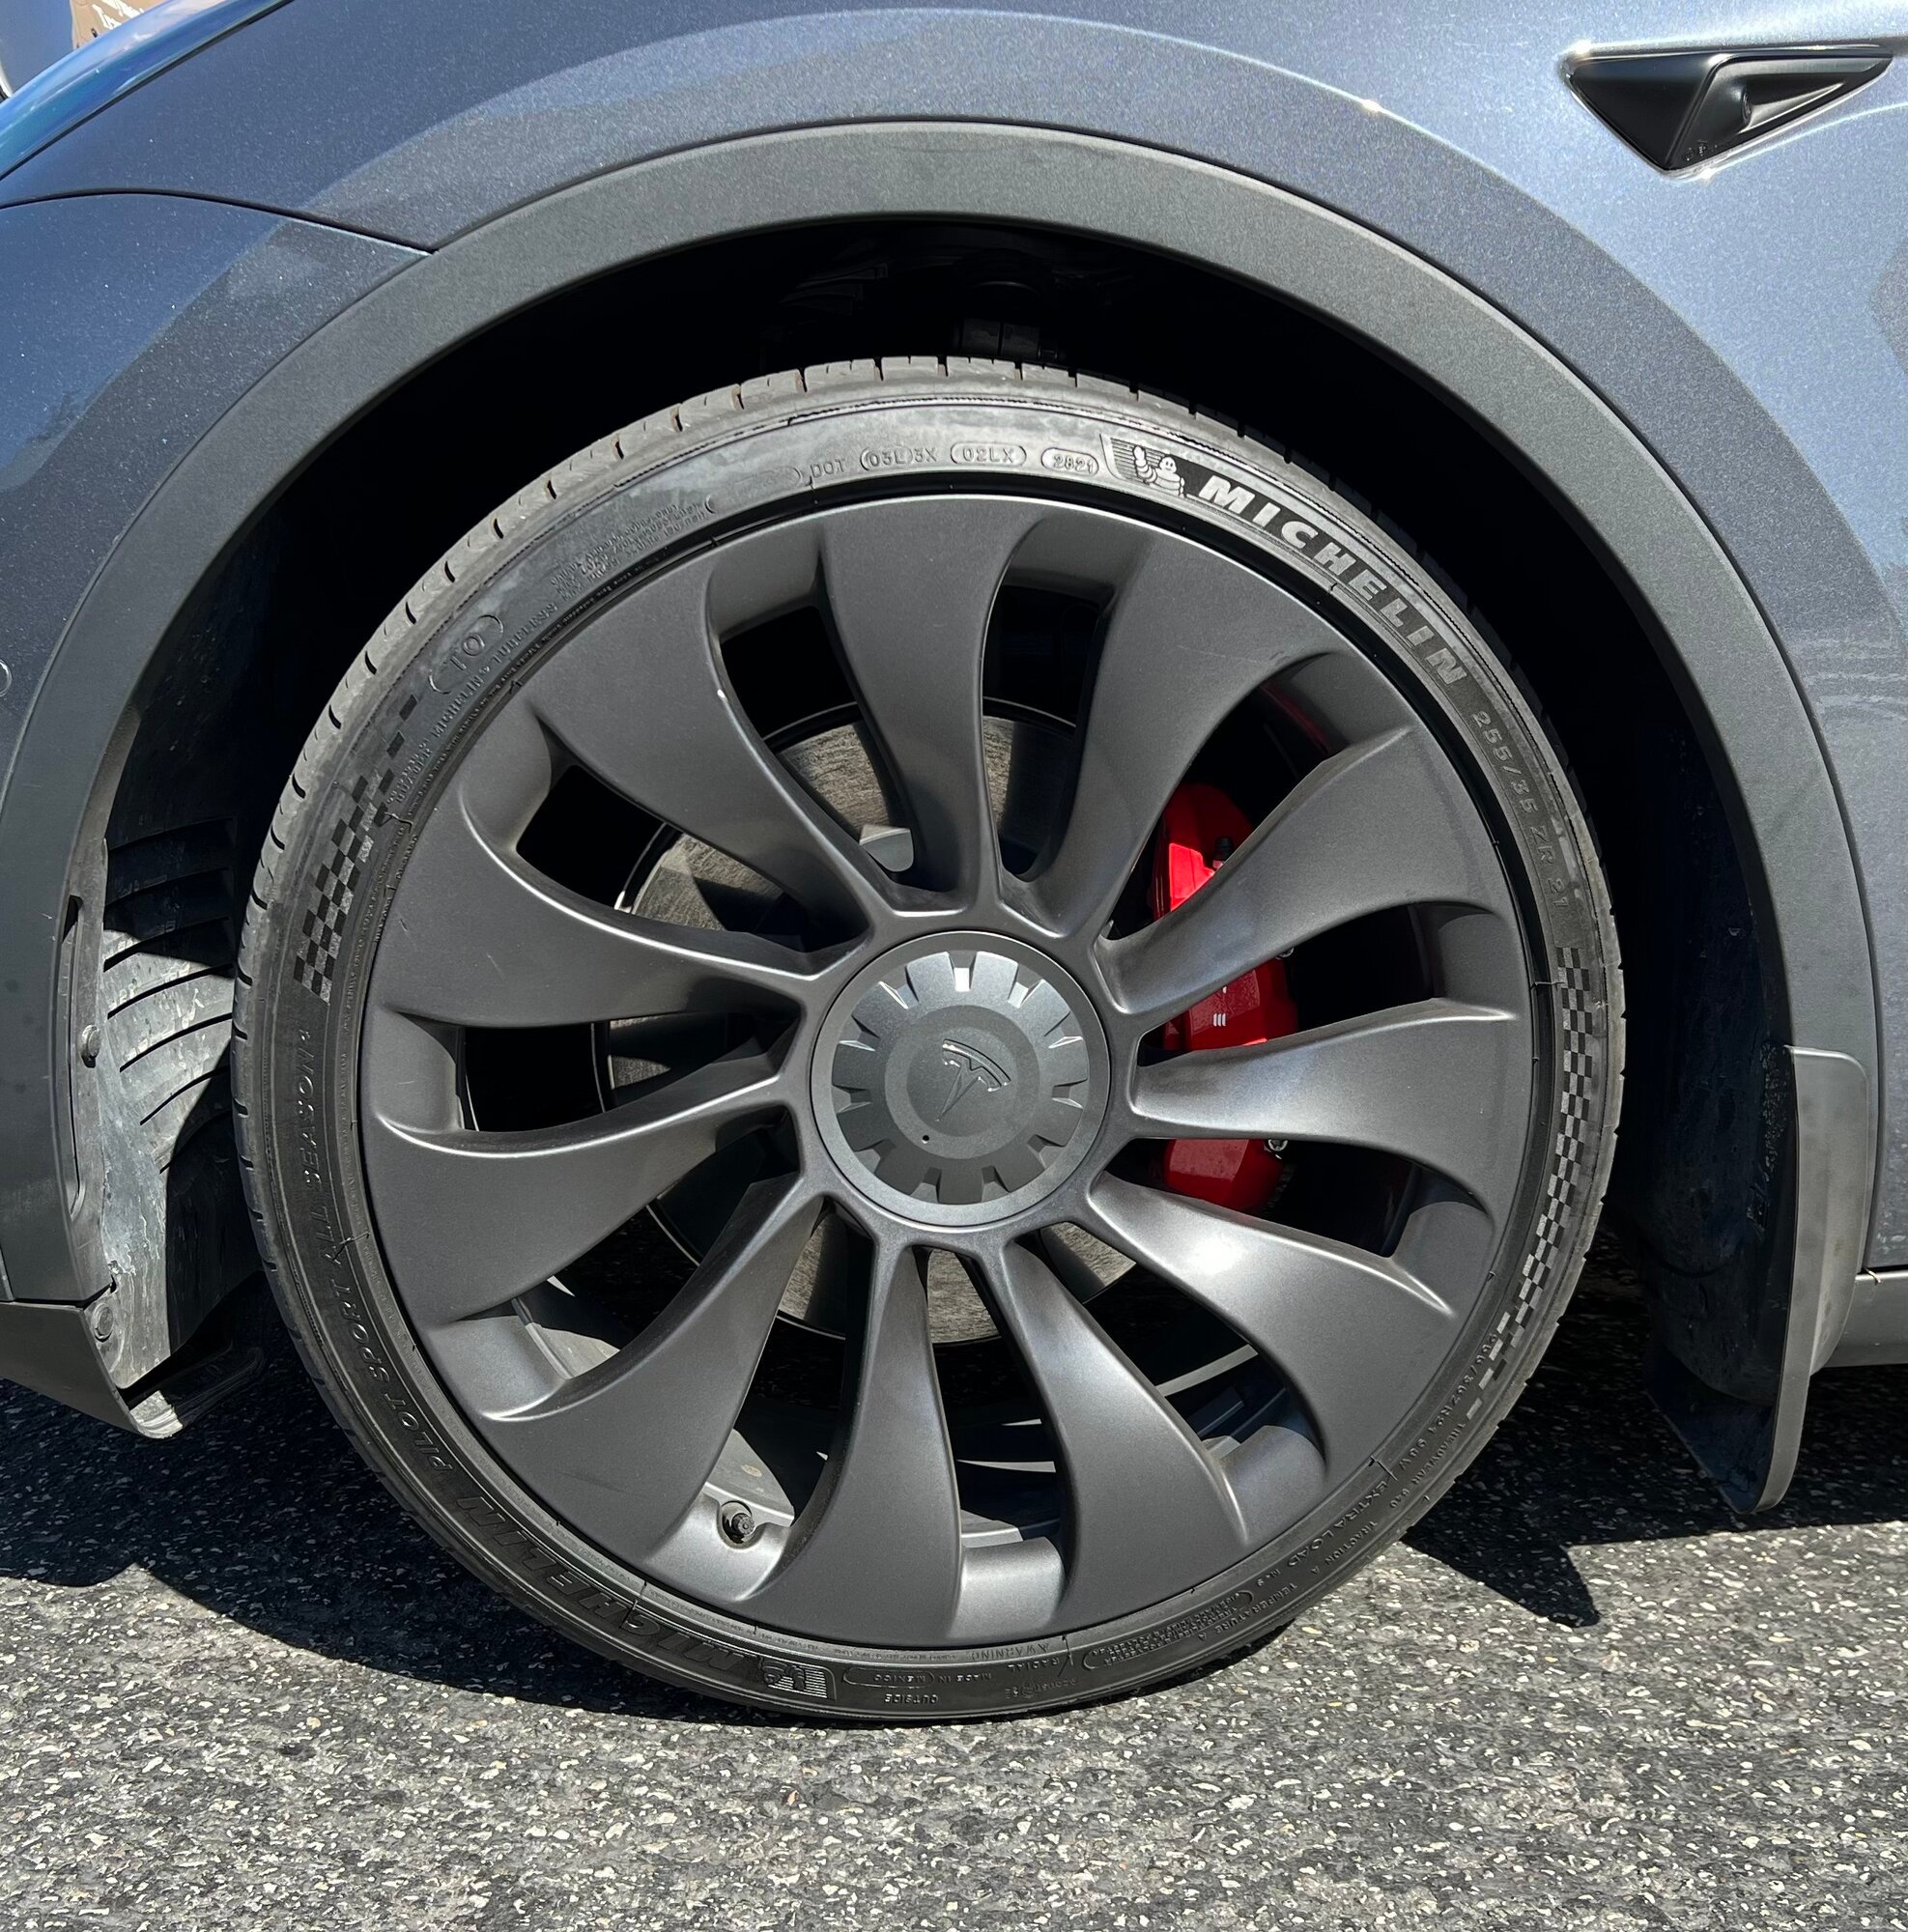 30 vs 35 profile tires - Michelin 4S